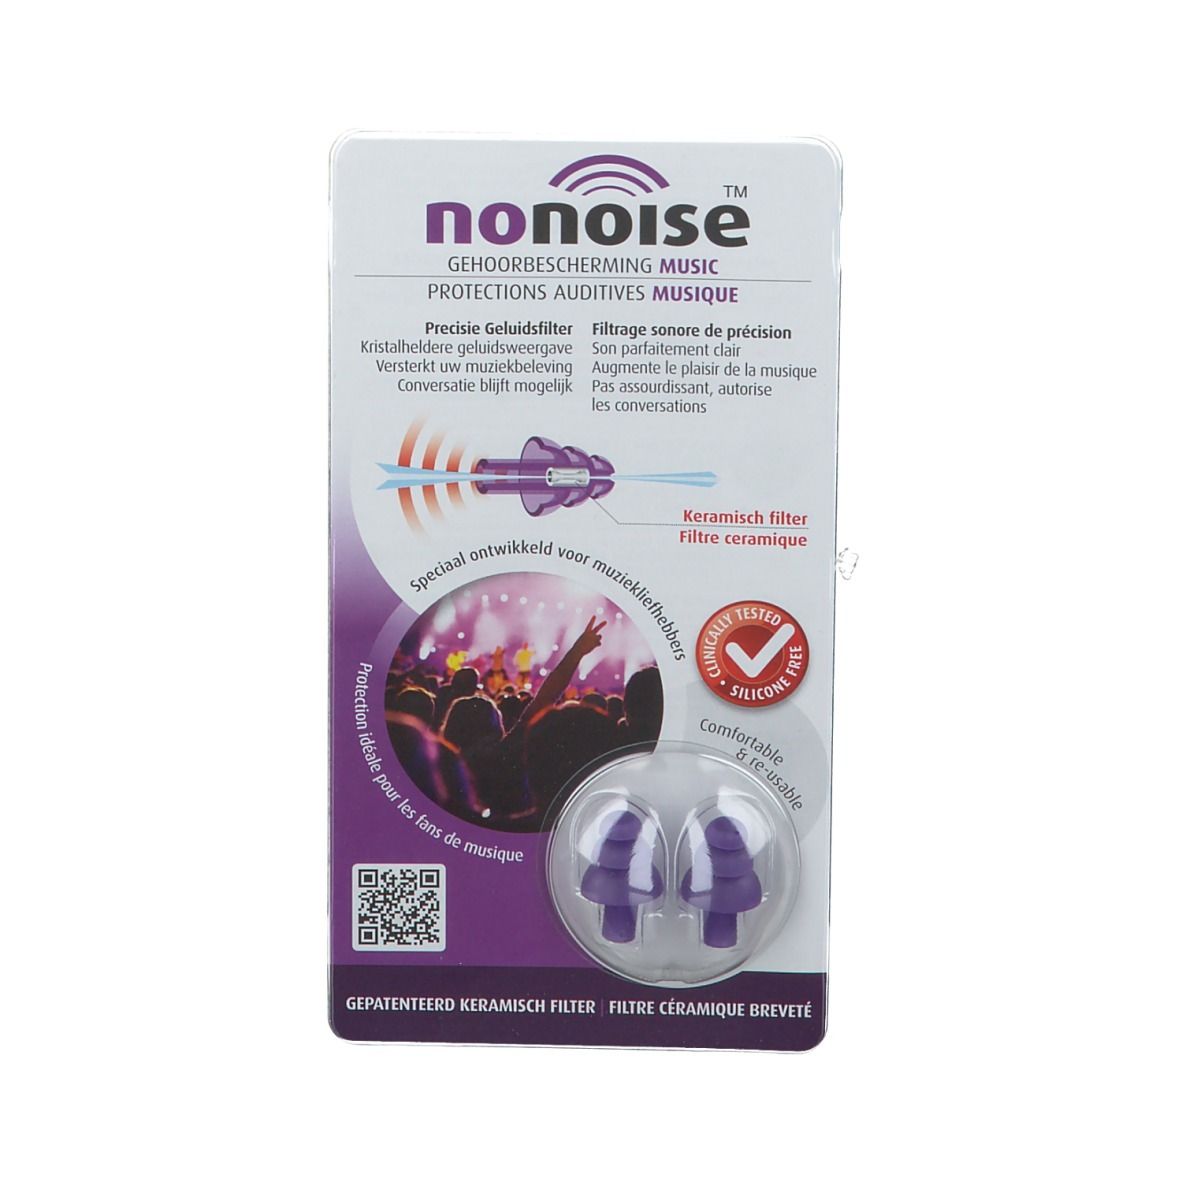 NoNoise™ Protection Auditive Musique